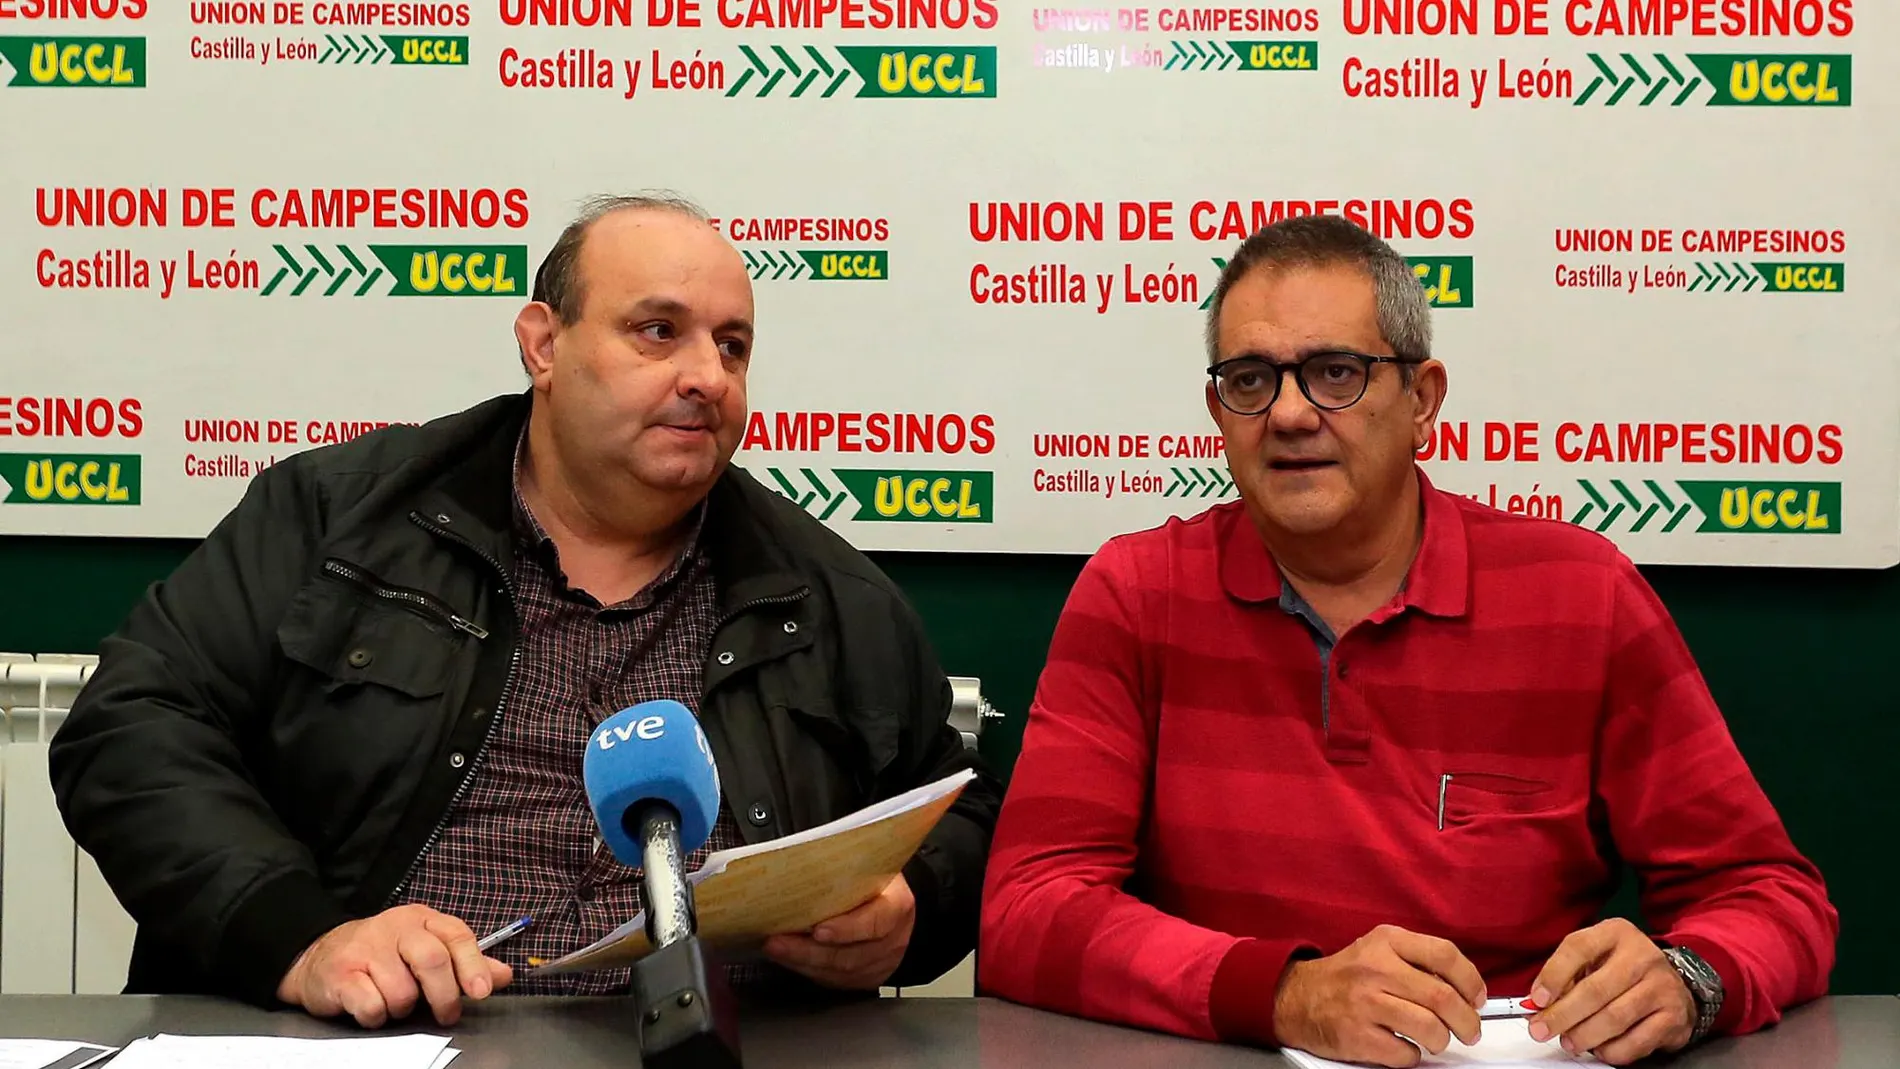 El responsable de remolacha de UCCL, Juan Antonio Rodríguez, y el coordinador de UCCL en Valladolid, Ignacio Arias, explican su posición ante Azucarera